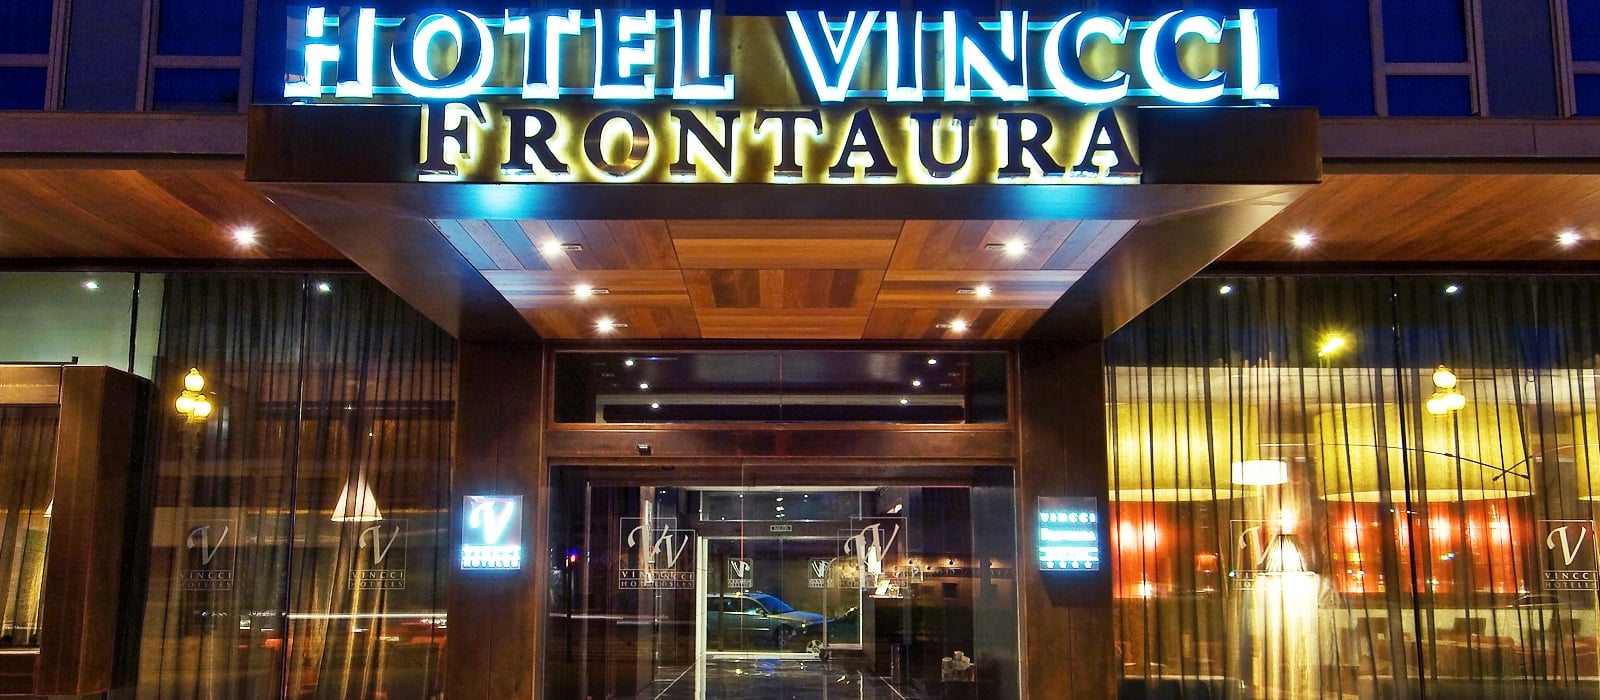 Fachada-Hotel Valladolid Frontaura - Vincci Hoteles